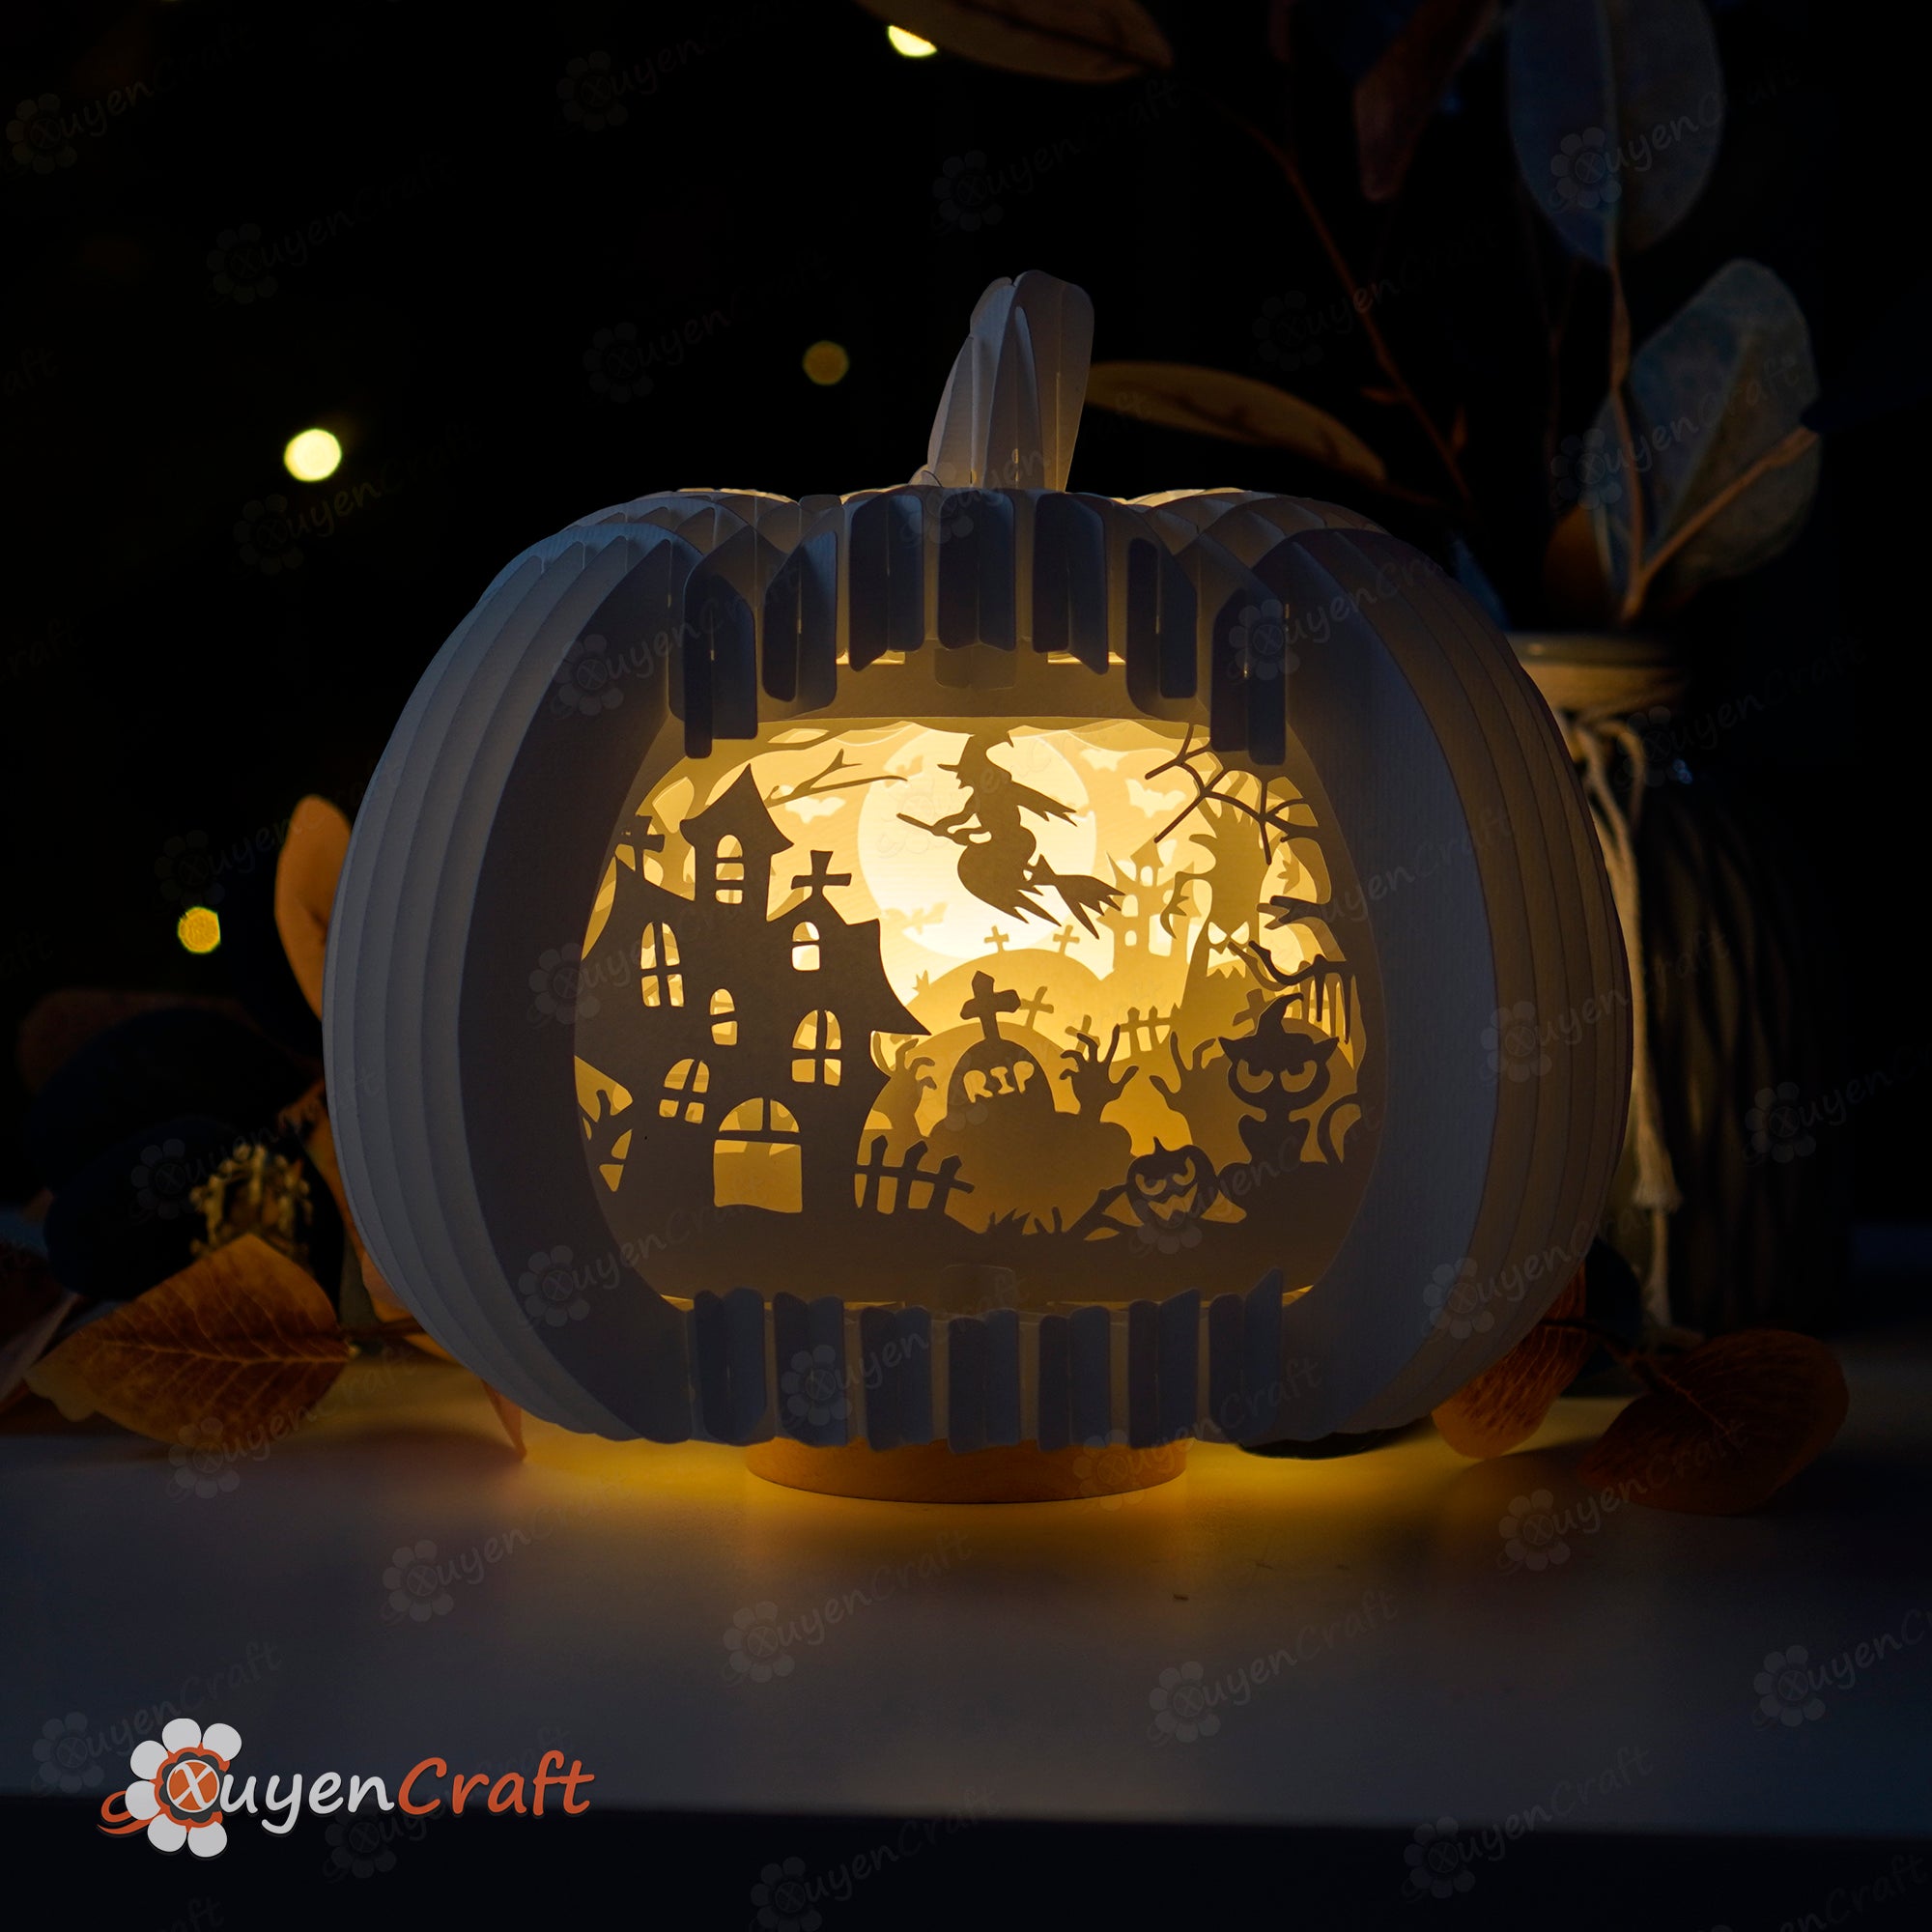 3d pumpkin svg, 3d pumpkin cricut, pumpkin.svg, 3d halloween pumpkin svg, cricut projects, halloween lanterns